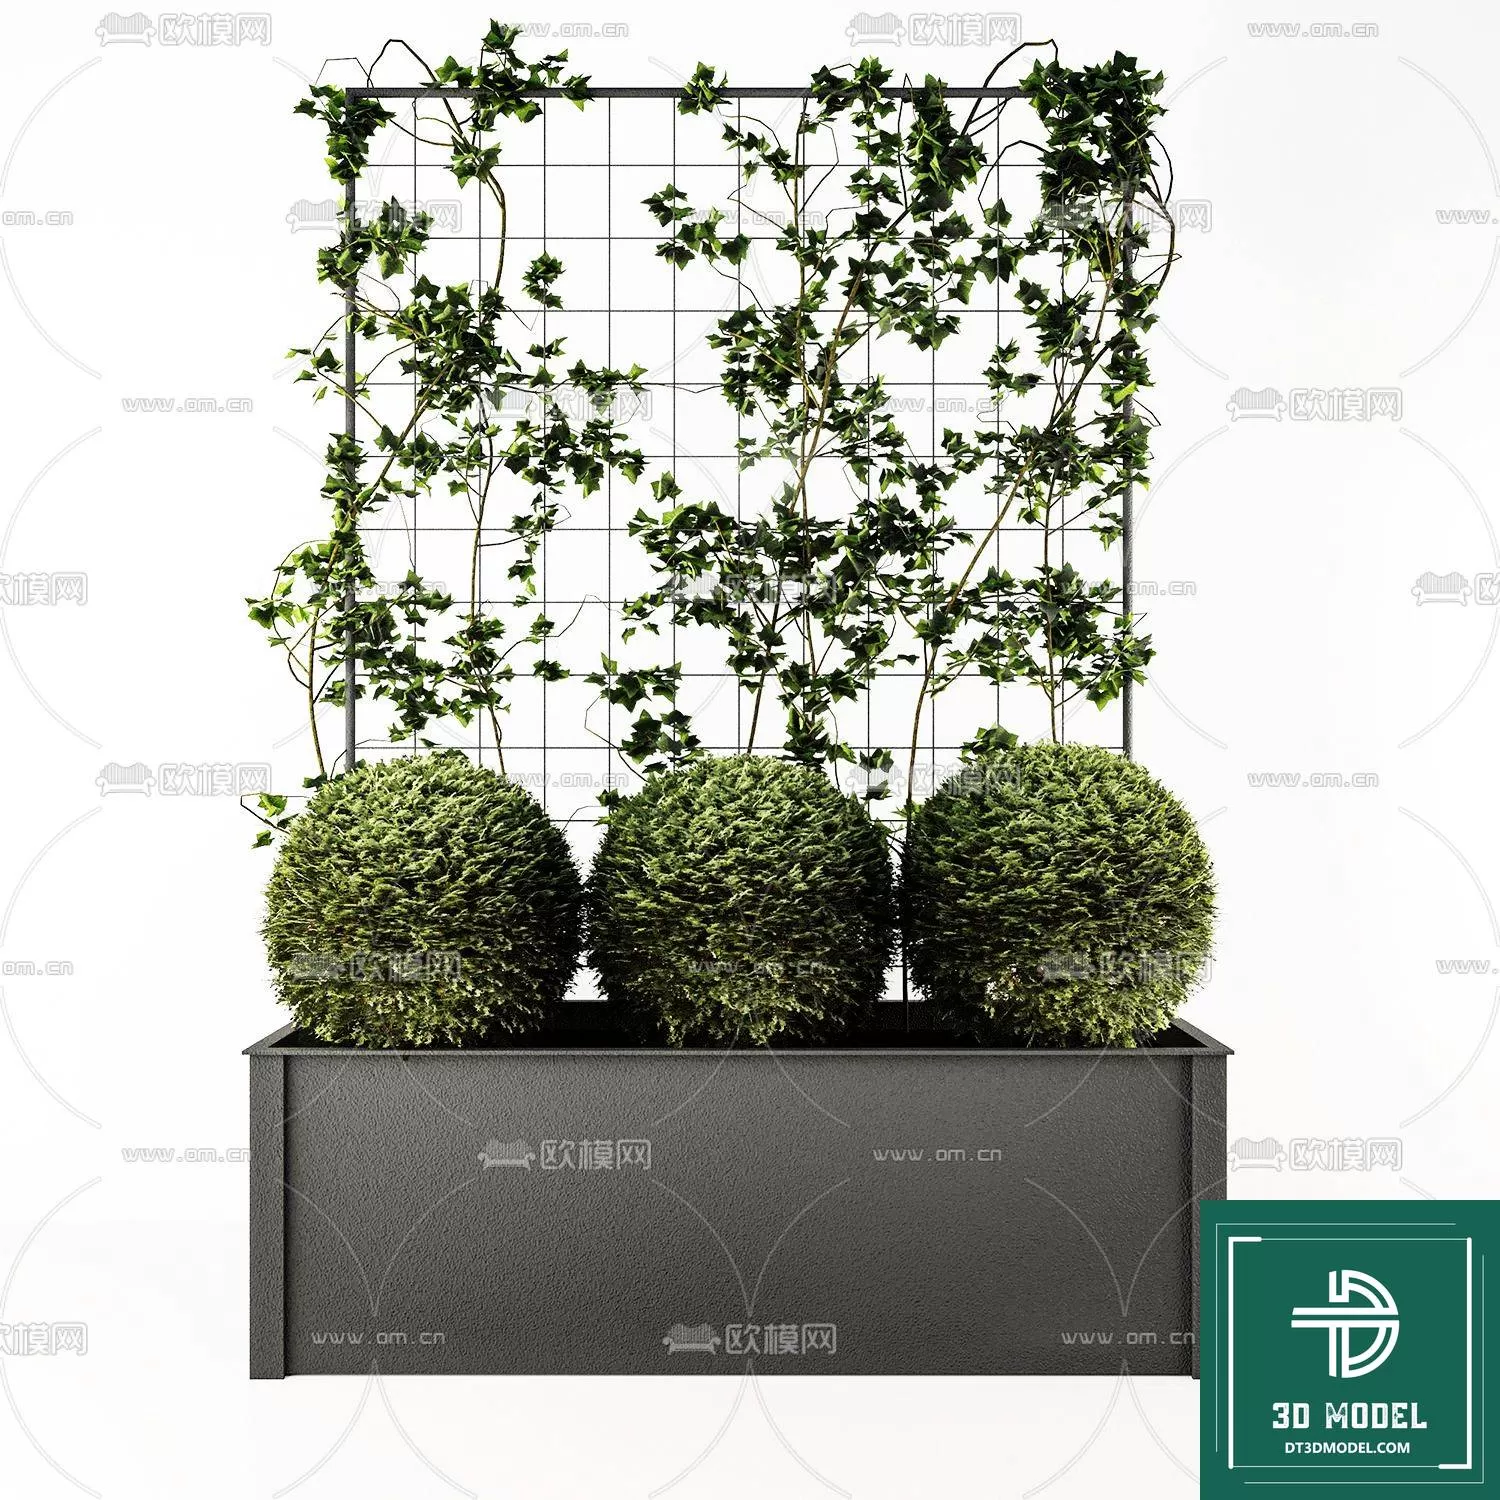 VERTICAL GARDEN – FITOWALL PLANT 3D MODEL – 057